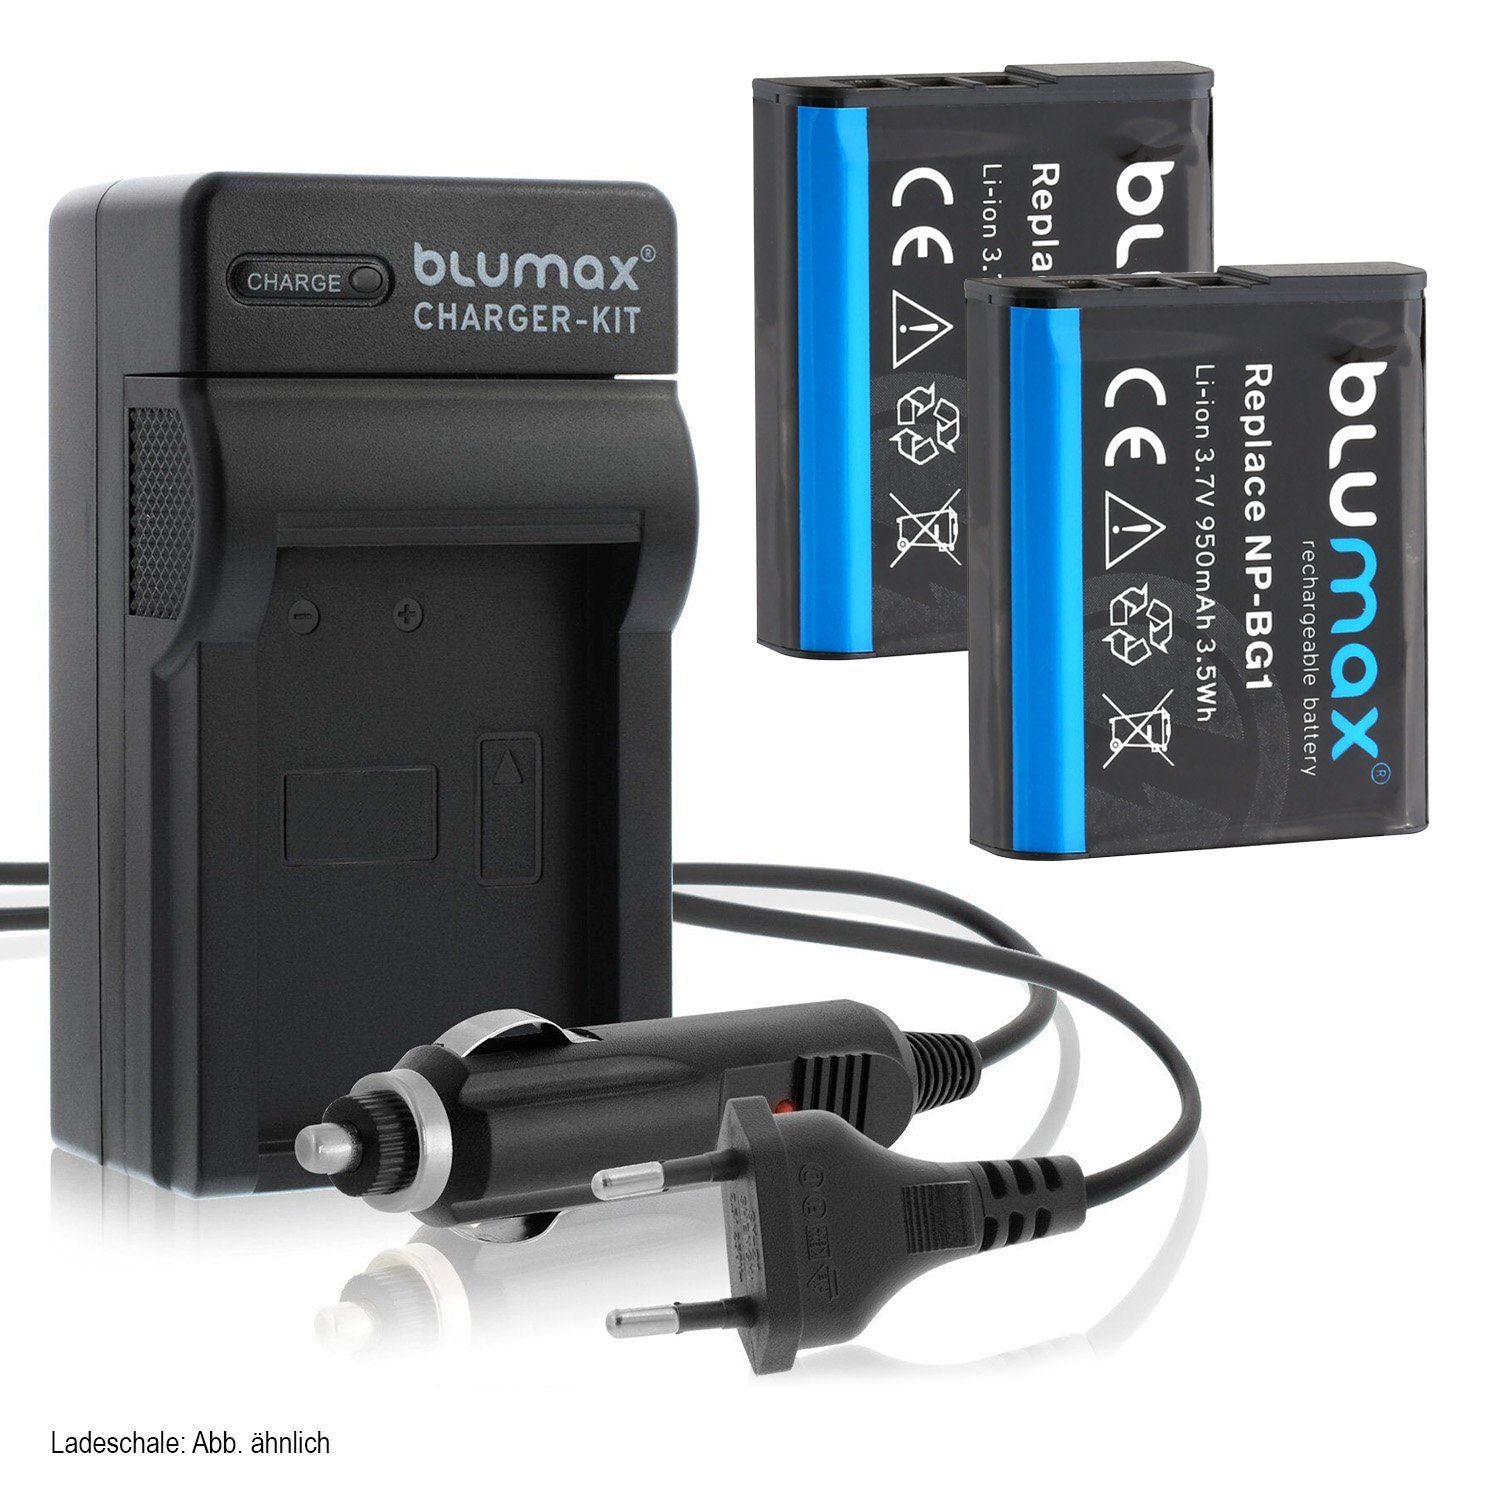 Blumax Set mit Lader für Sony NP-BG1 Cyber-shot 950 mAh Kamera-Akku | Kamera-Akkus